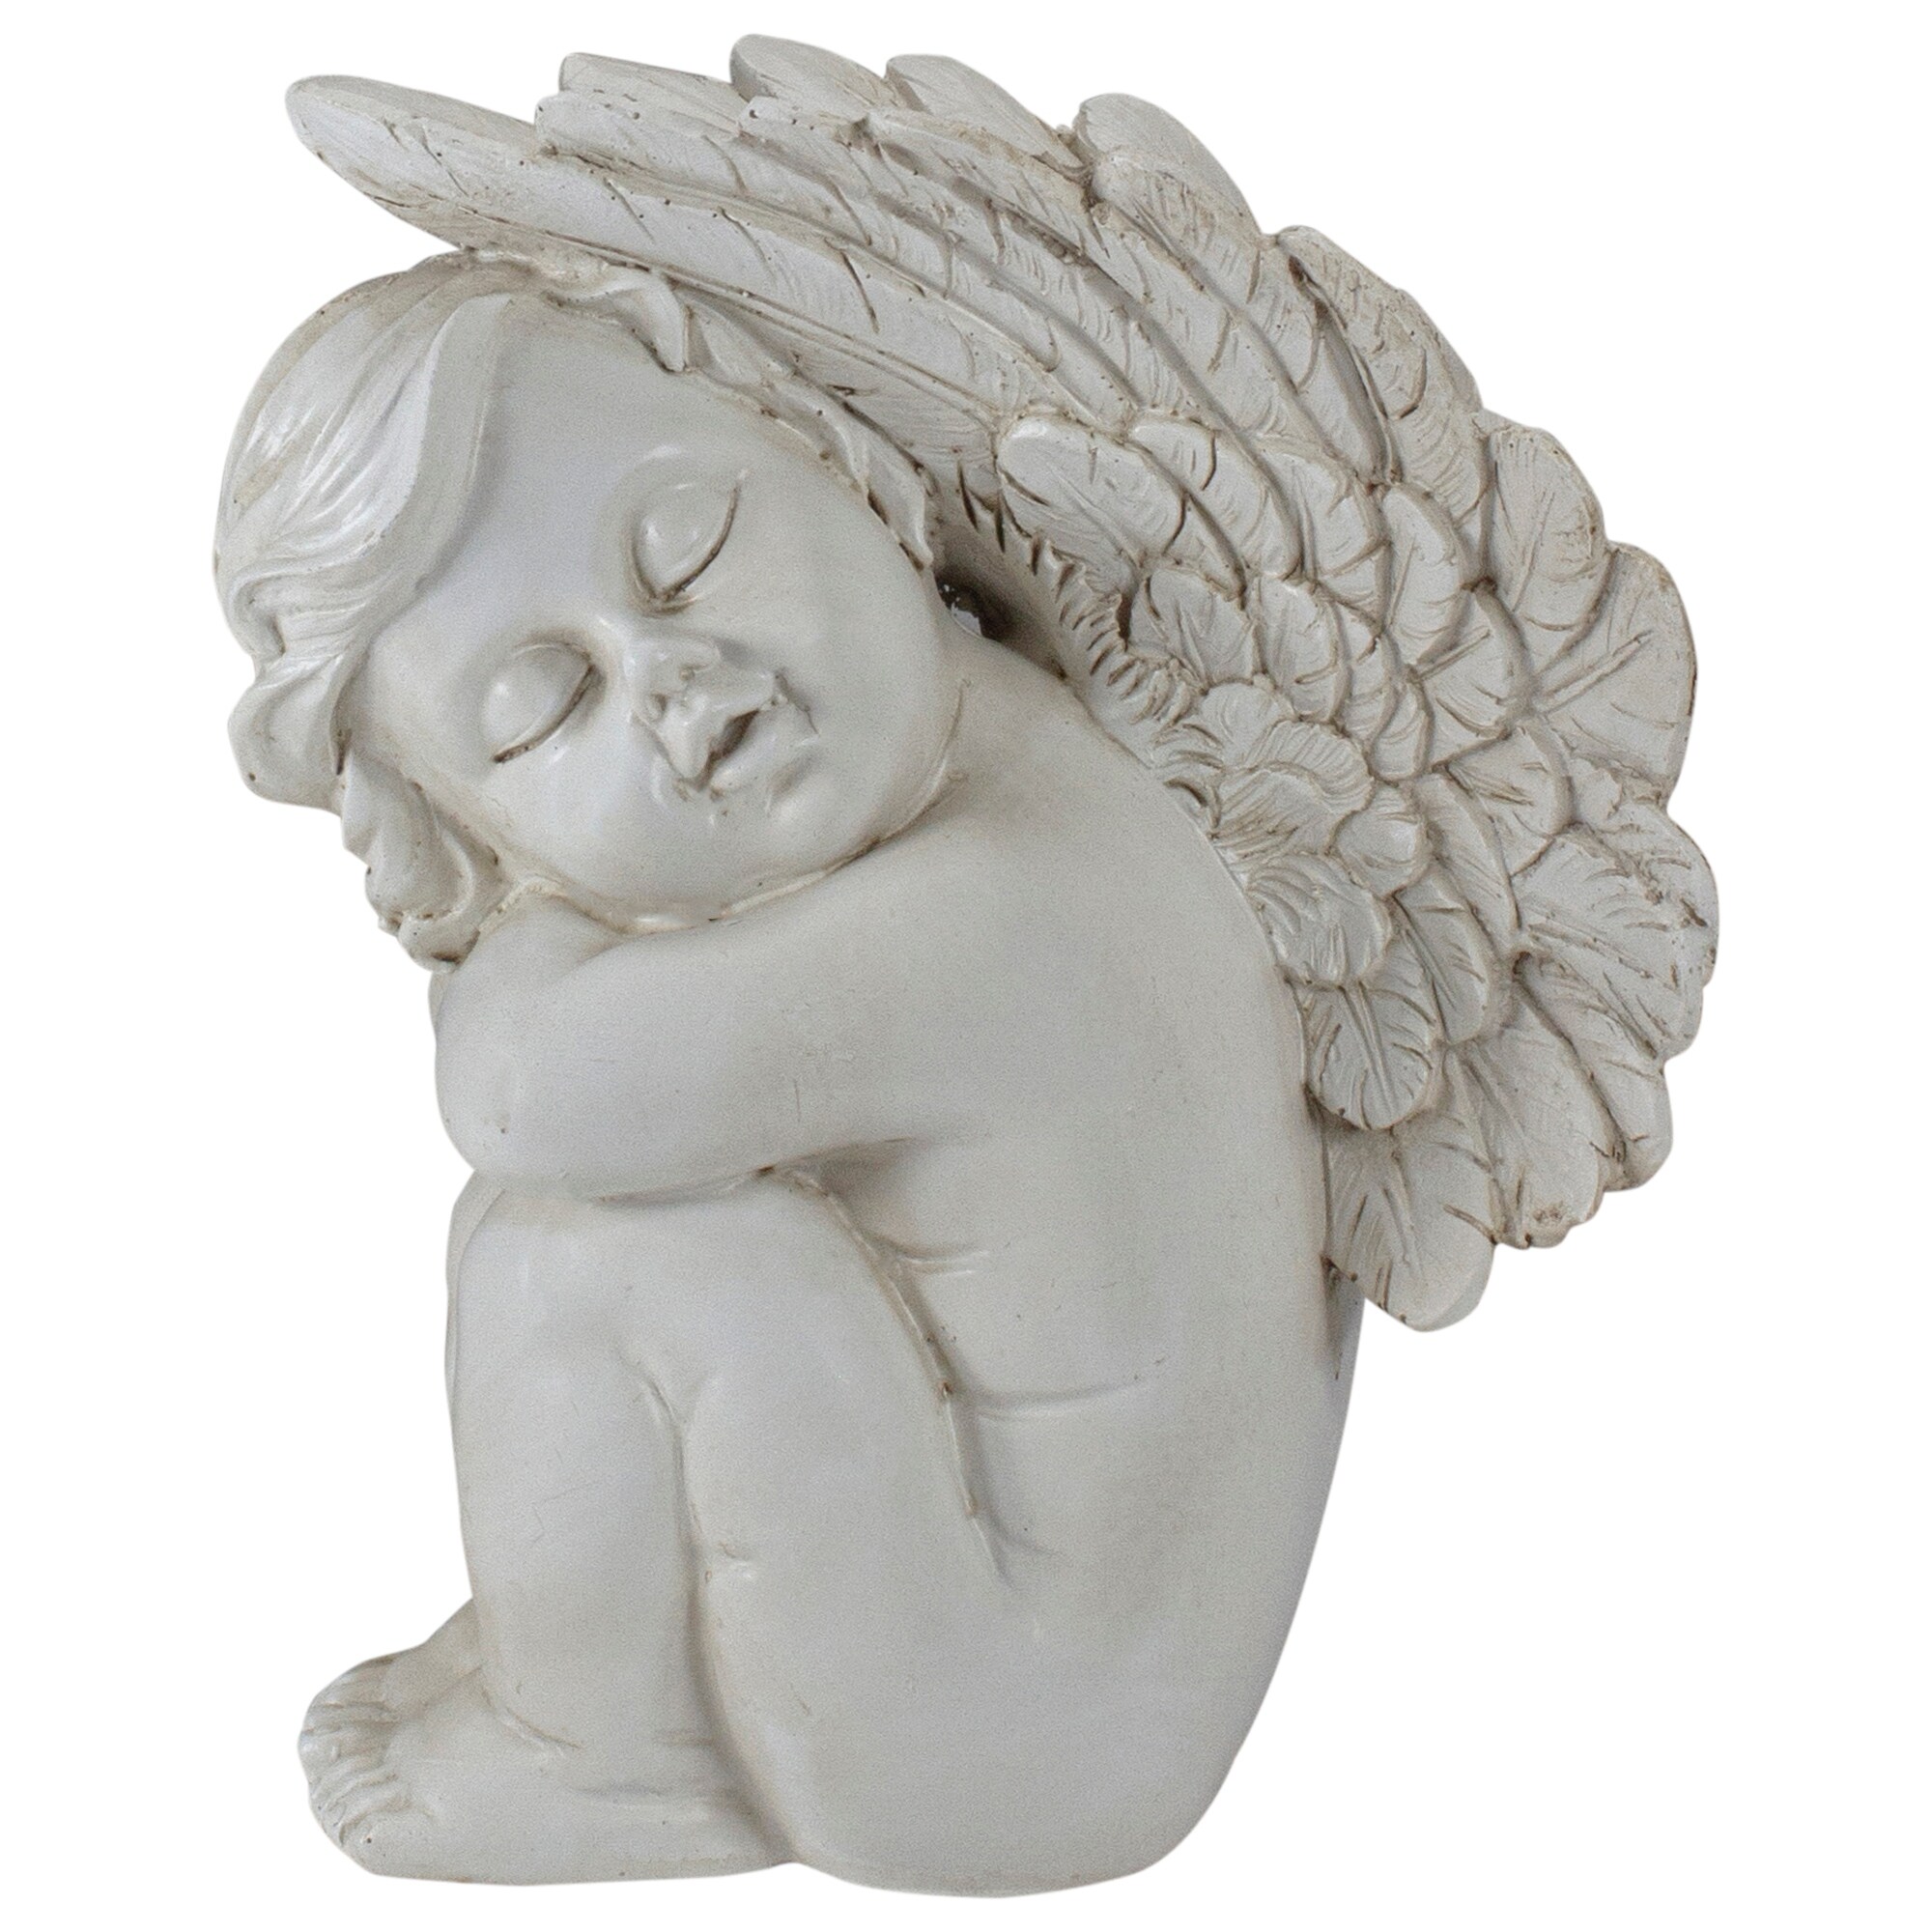 7.5" Ivory Left Facing Sleeping Cherub Angel Outdoor Garden Statue - image 1 of 5